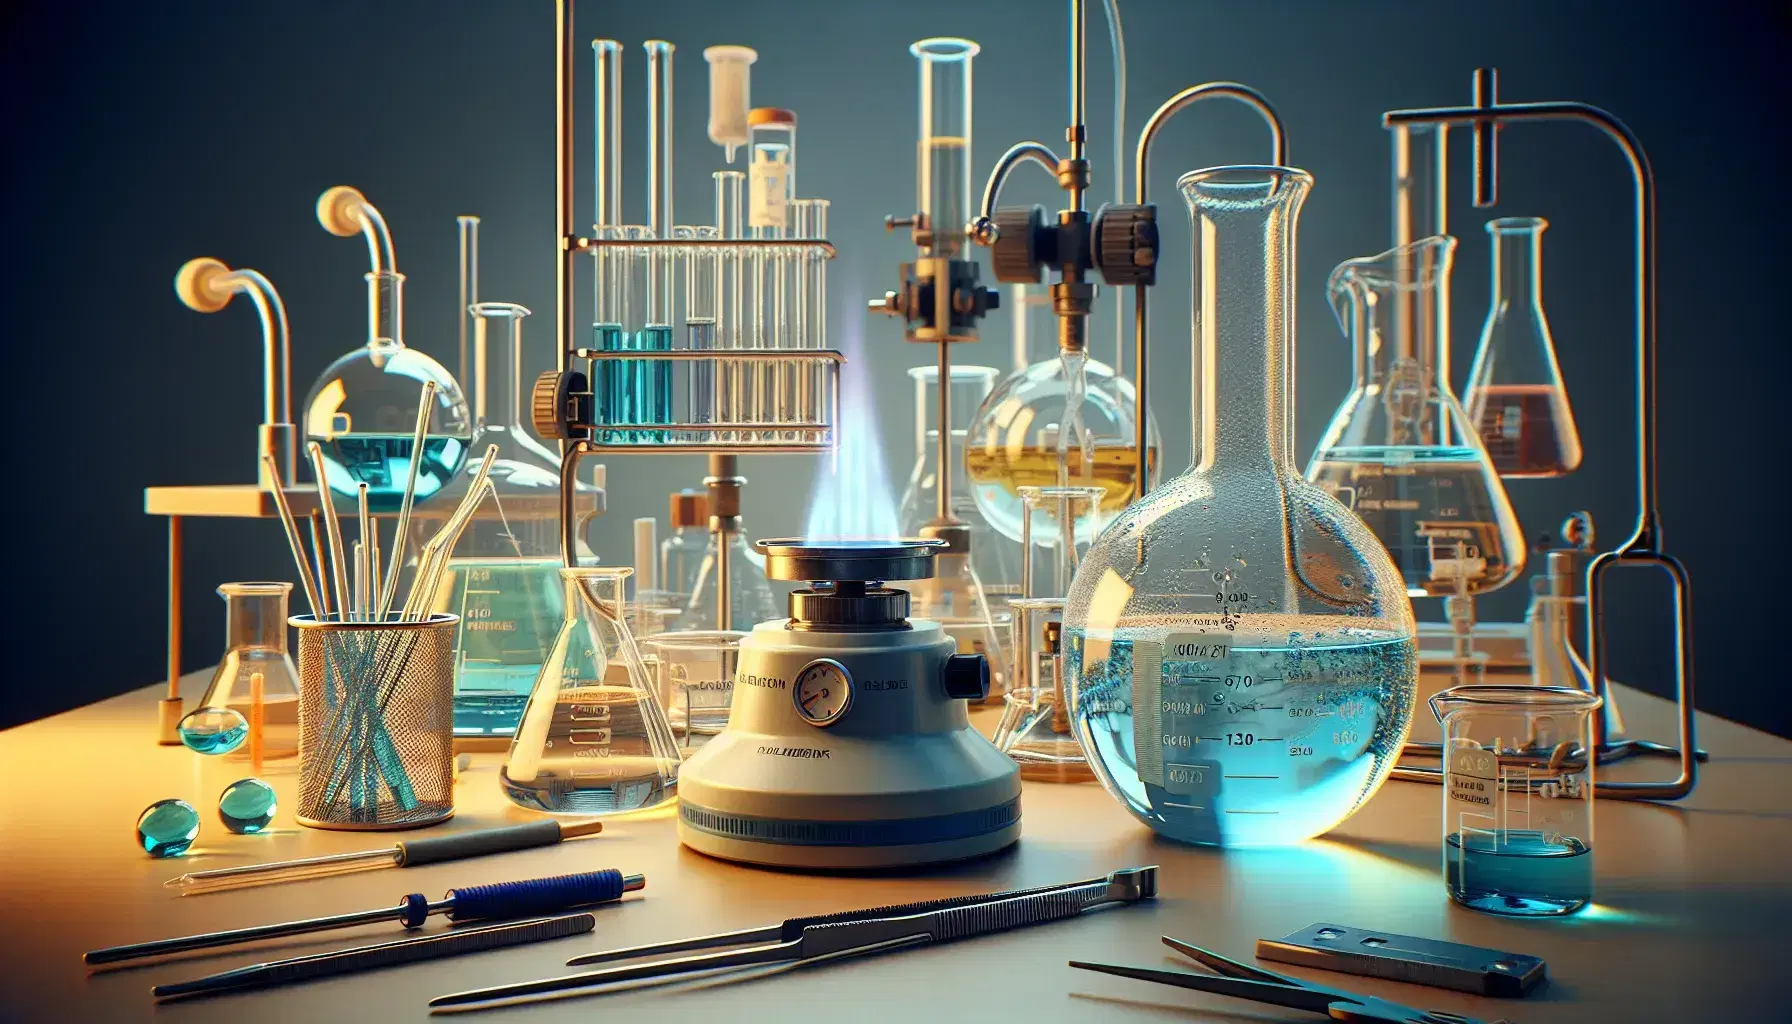 Laboratorio de química con matraces Erlenmeyer, uno con líquido azul y otro incoloro, quemador Bunsen encendido, probeta con líquido transparente y utensilios de seguridad.